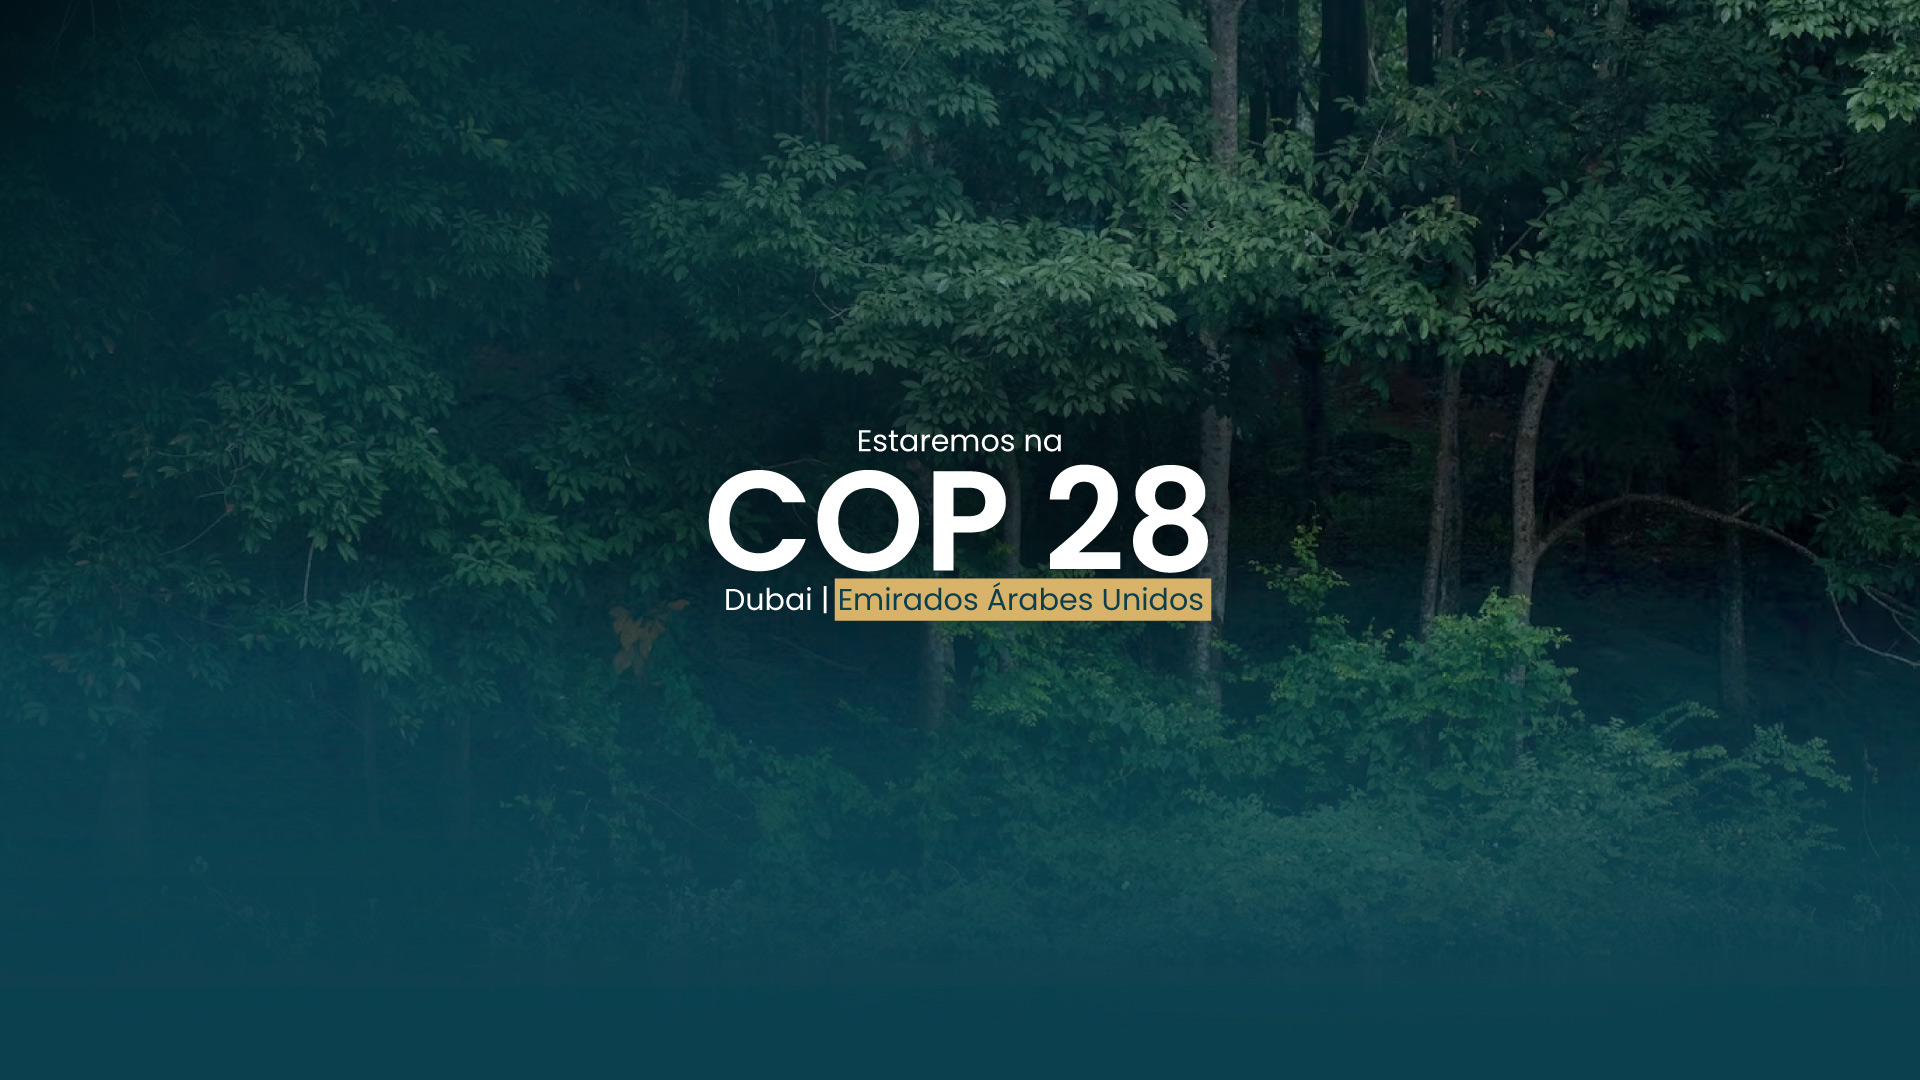 Fênix DTVM participará da COP 28 em Dubai